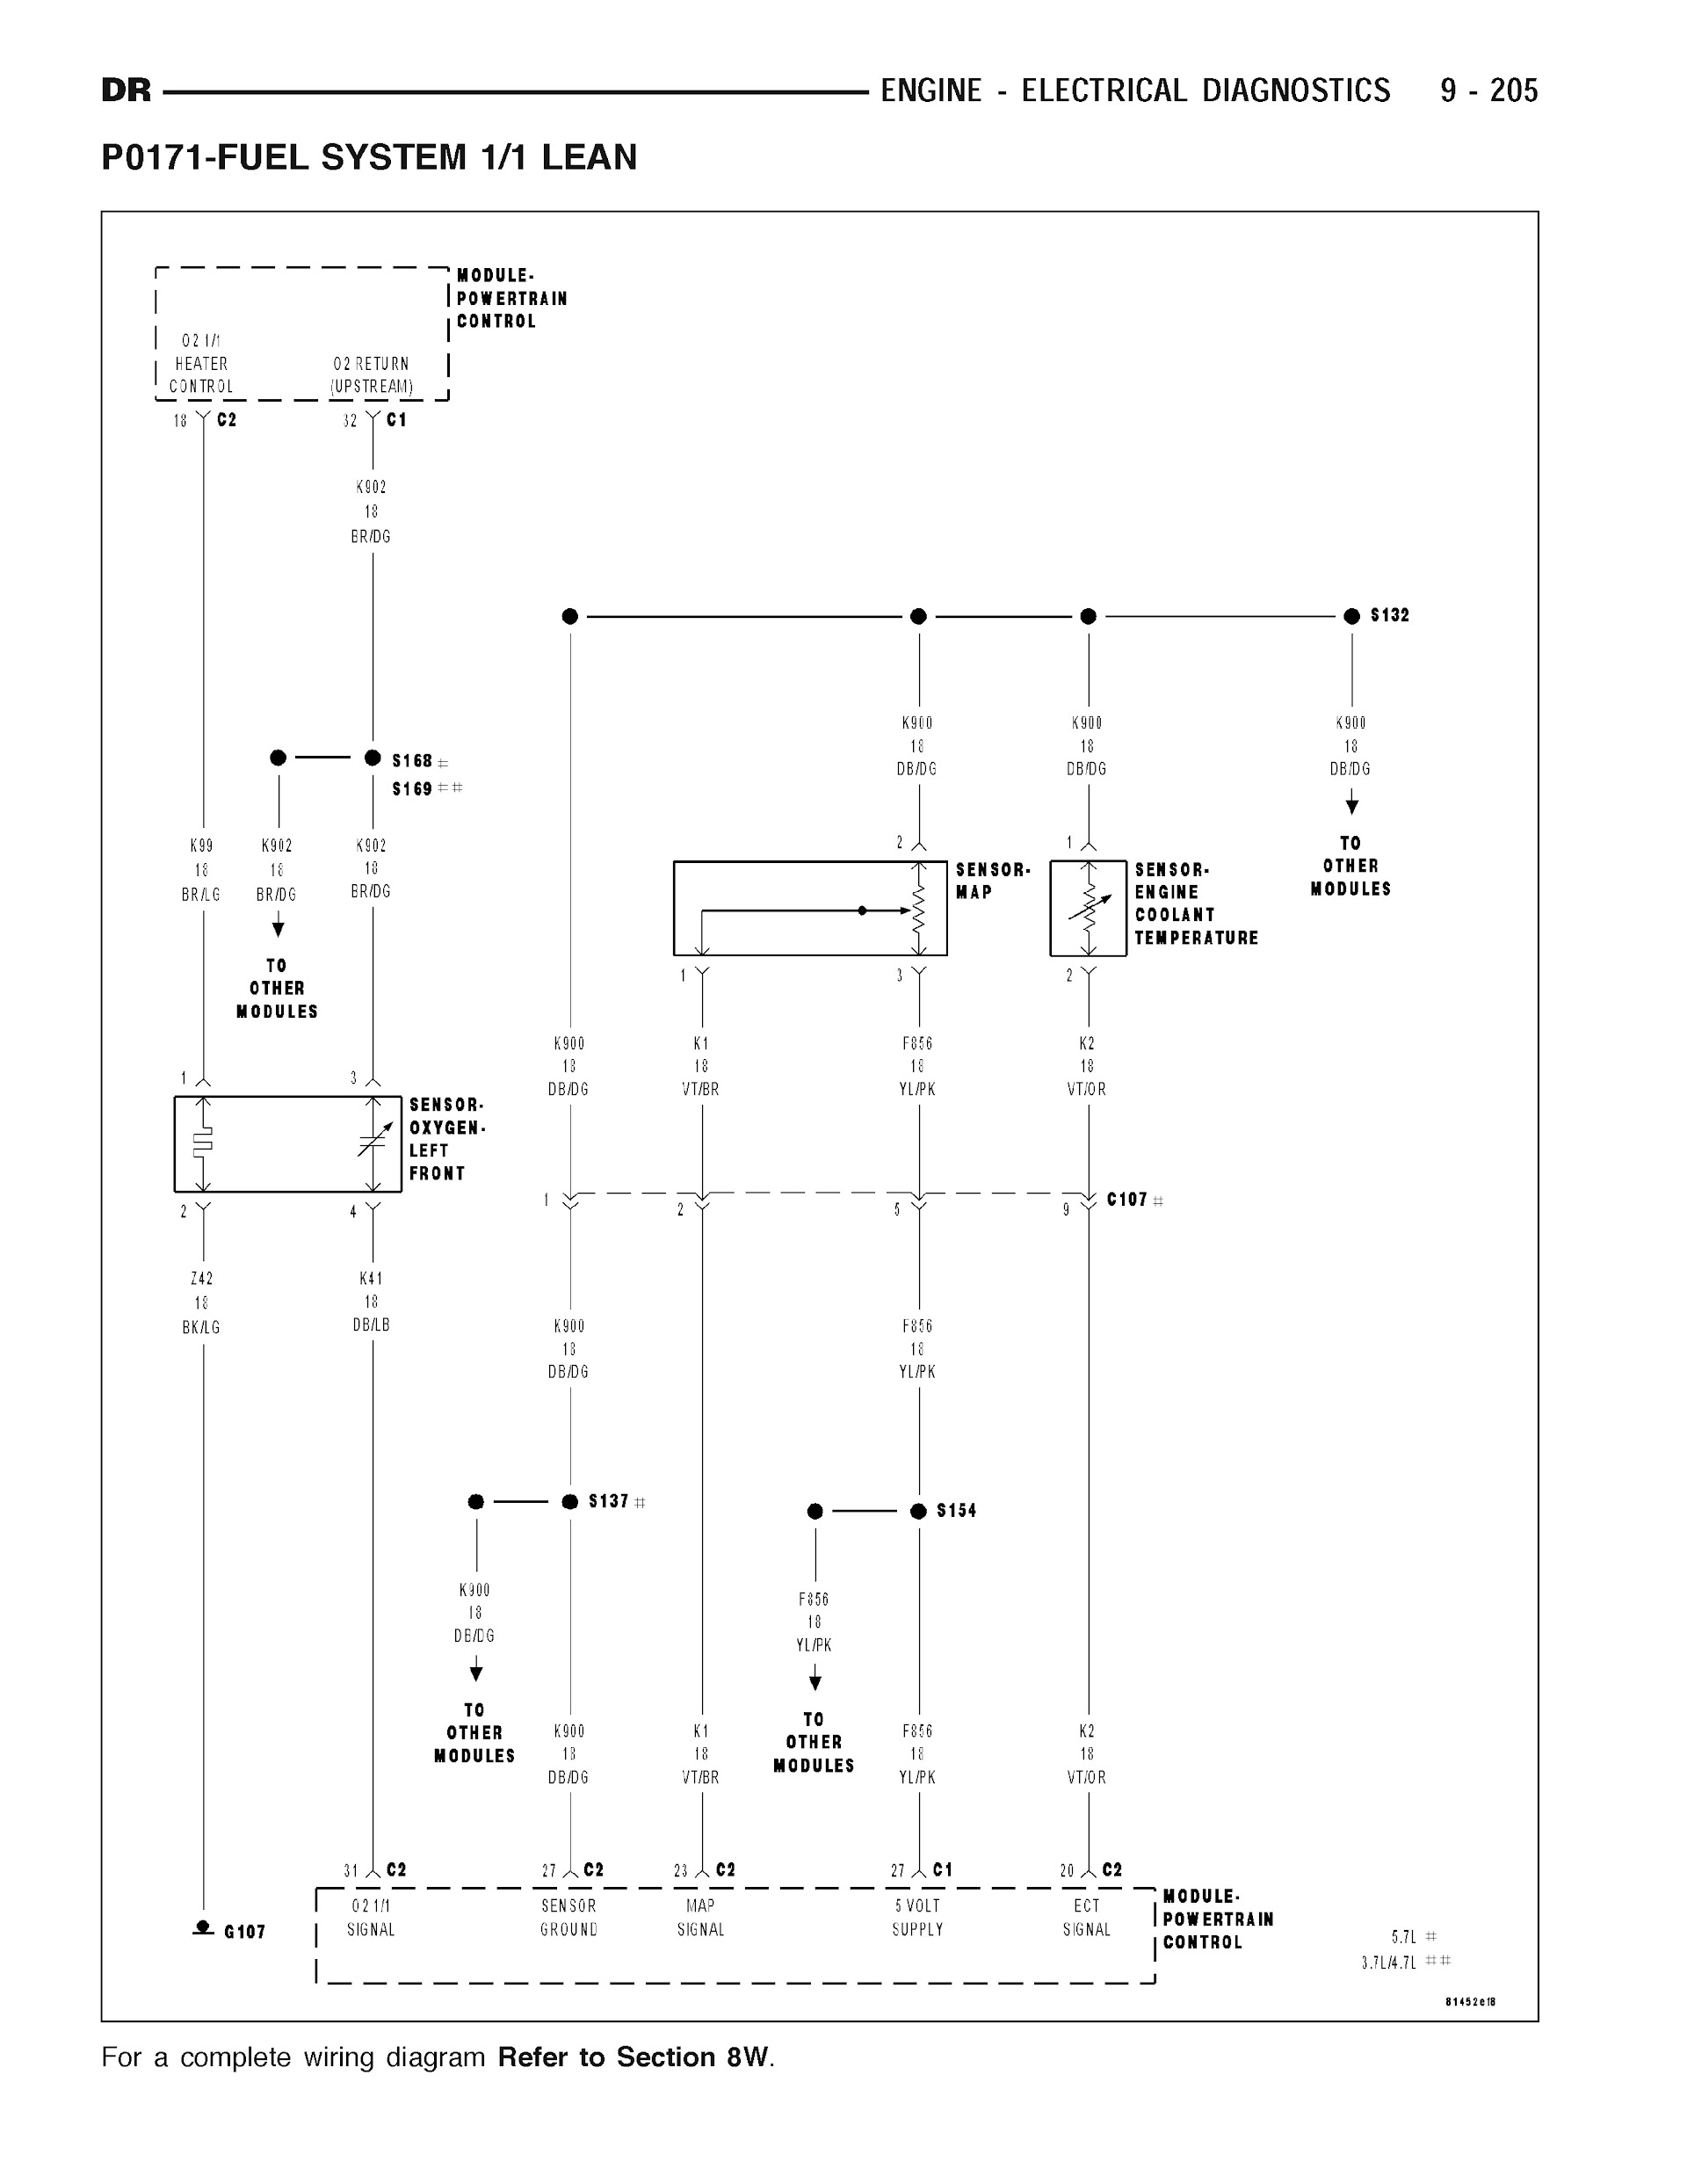 2007 Dodge RAM Repair Manual, Wiring Diagram